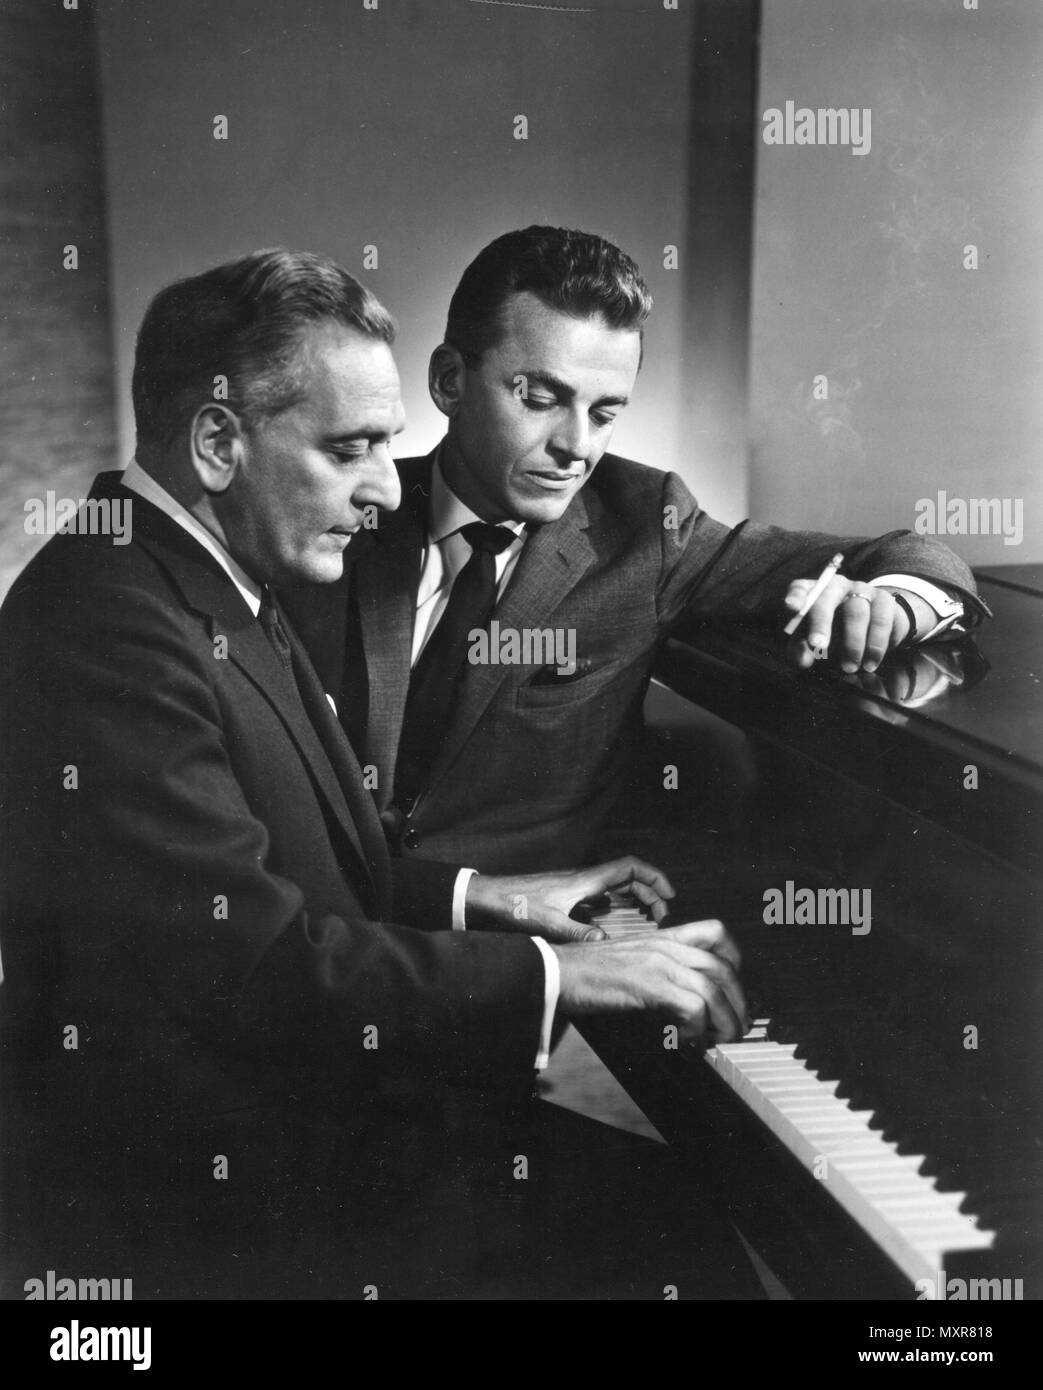 Alan Jay Lerner (avec la cigarette), et Frederick Loewe travailler ensemble au piano sur une autre partition musicale de Broadway. Les deux ont collaboré à la production de Broadway 'My Fair Lady." New York, NY, 1960. Banque D'Images